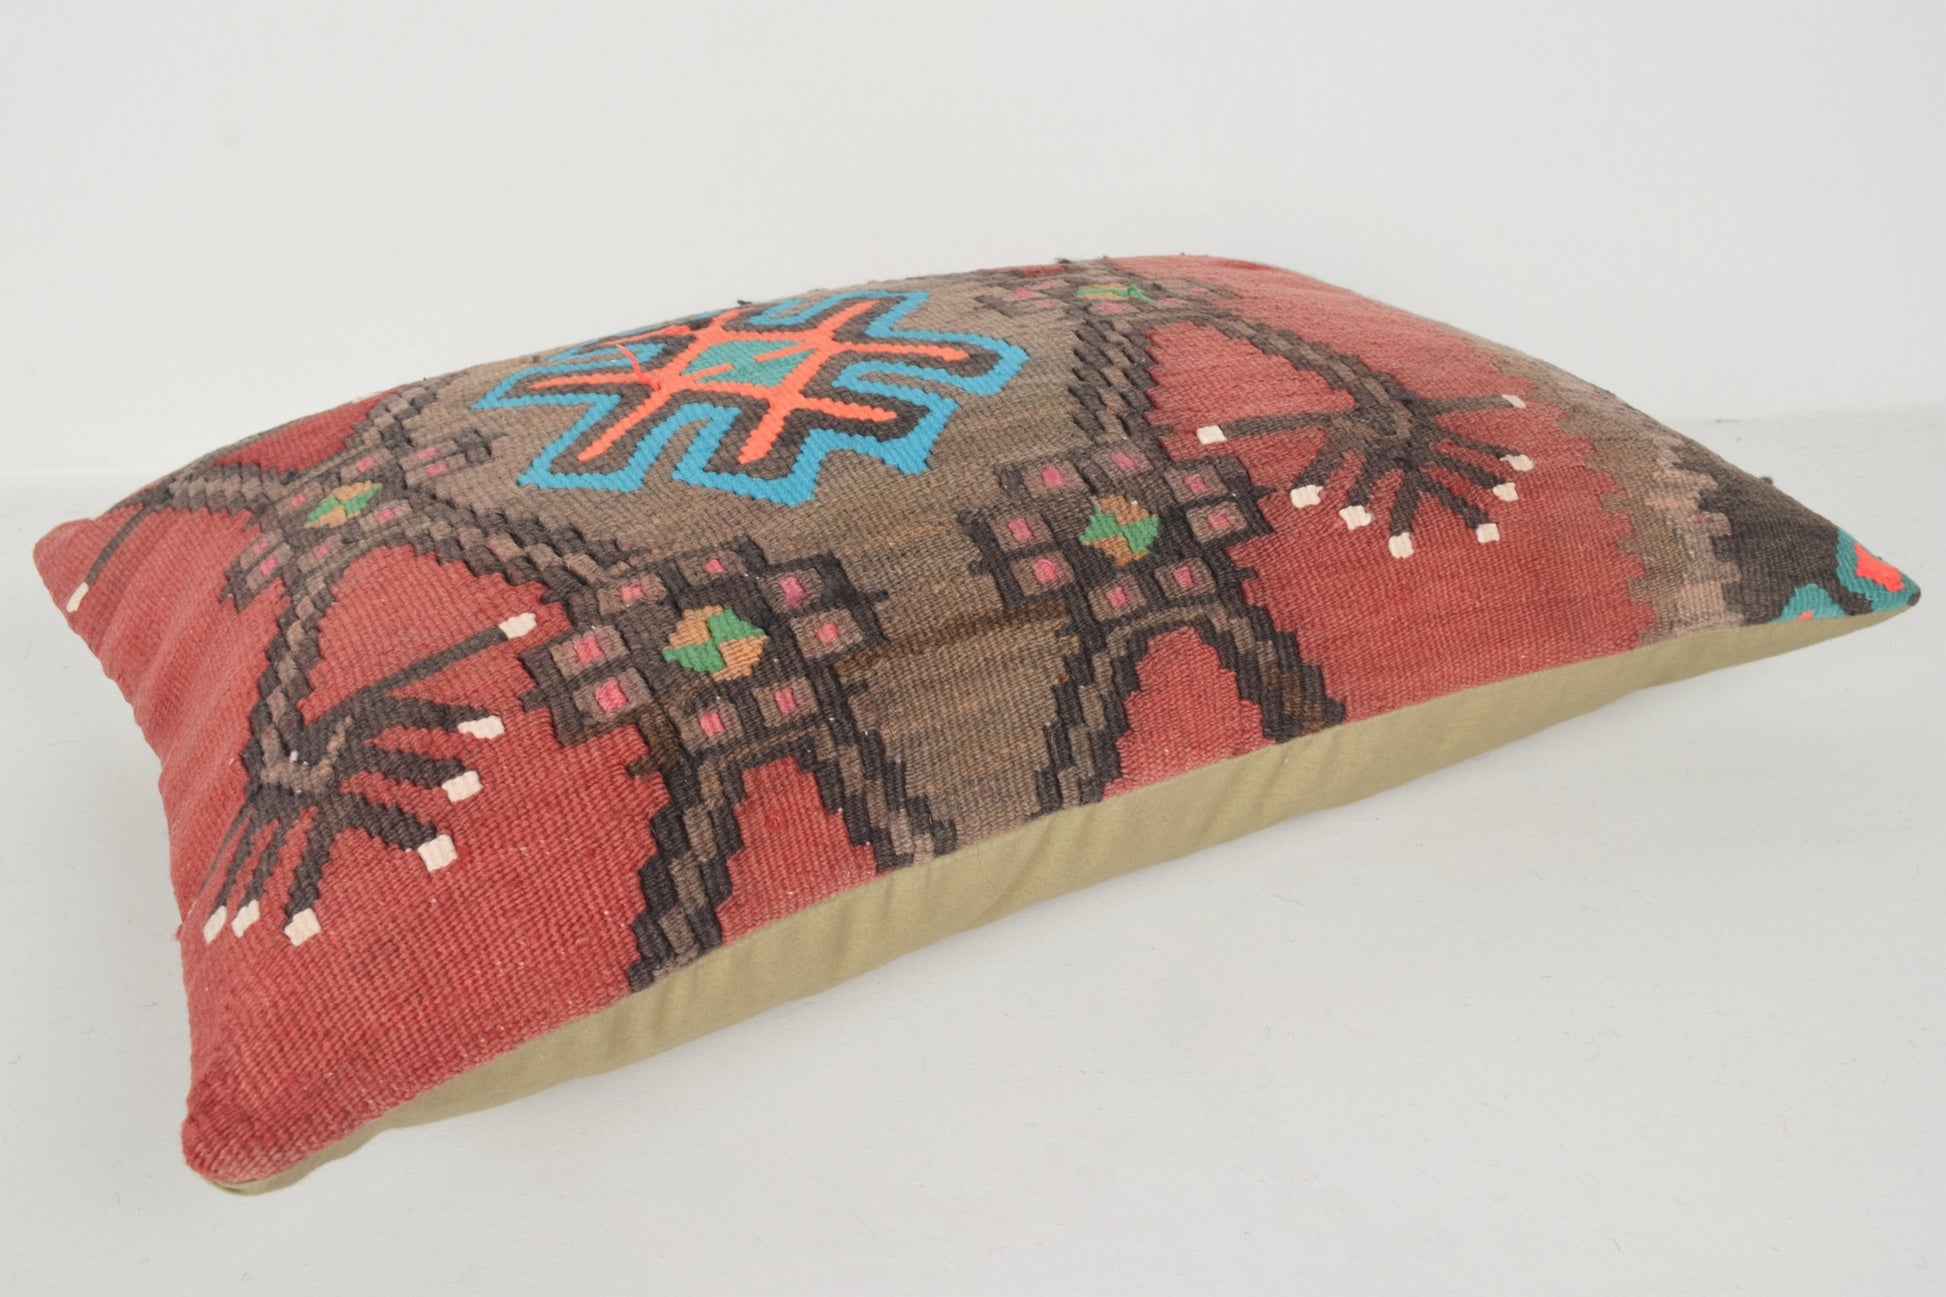 Turkish Rug Pillow Covers E00415 Lumbar Artwork Northern Floral